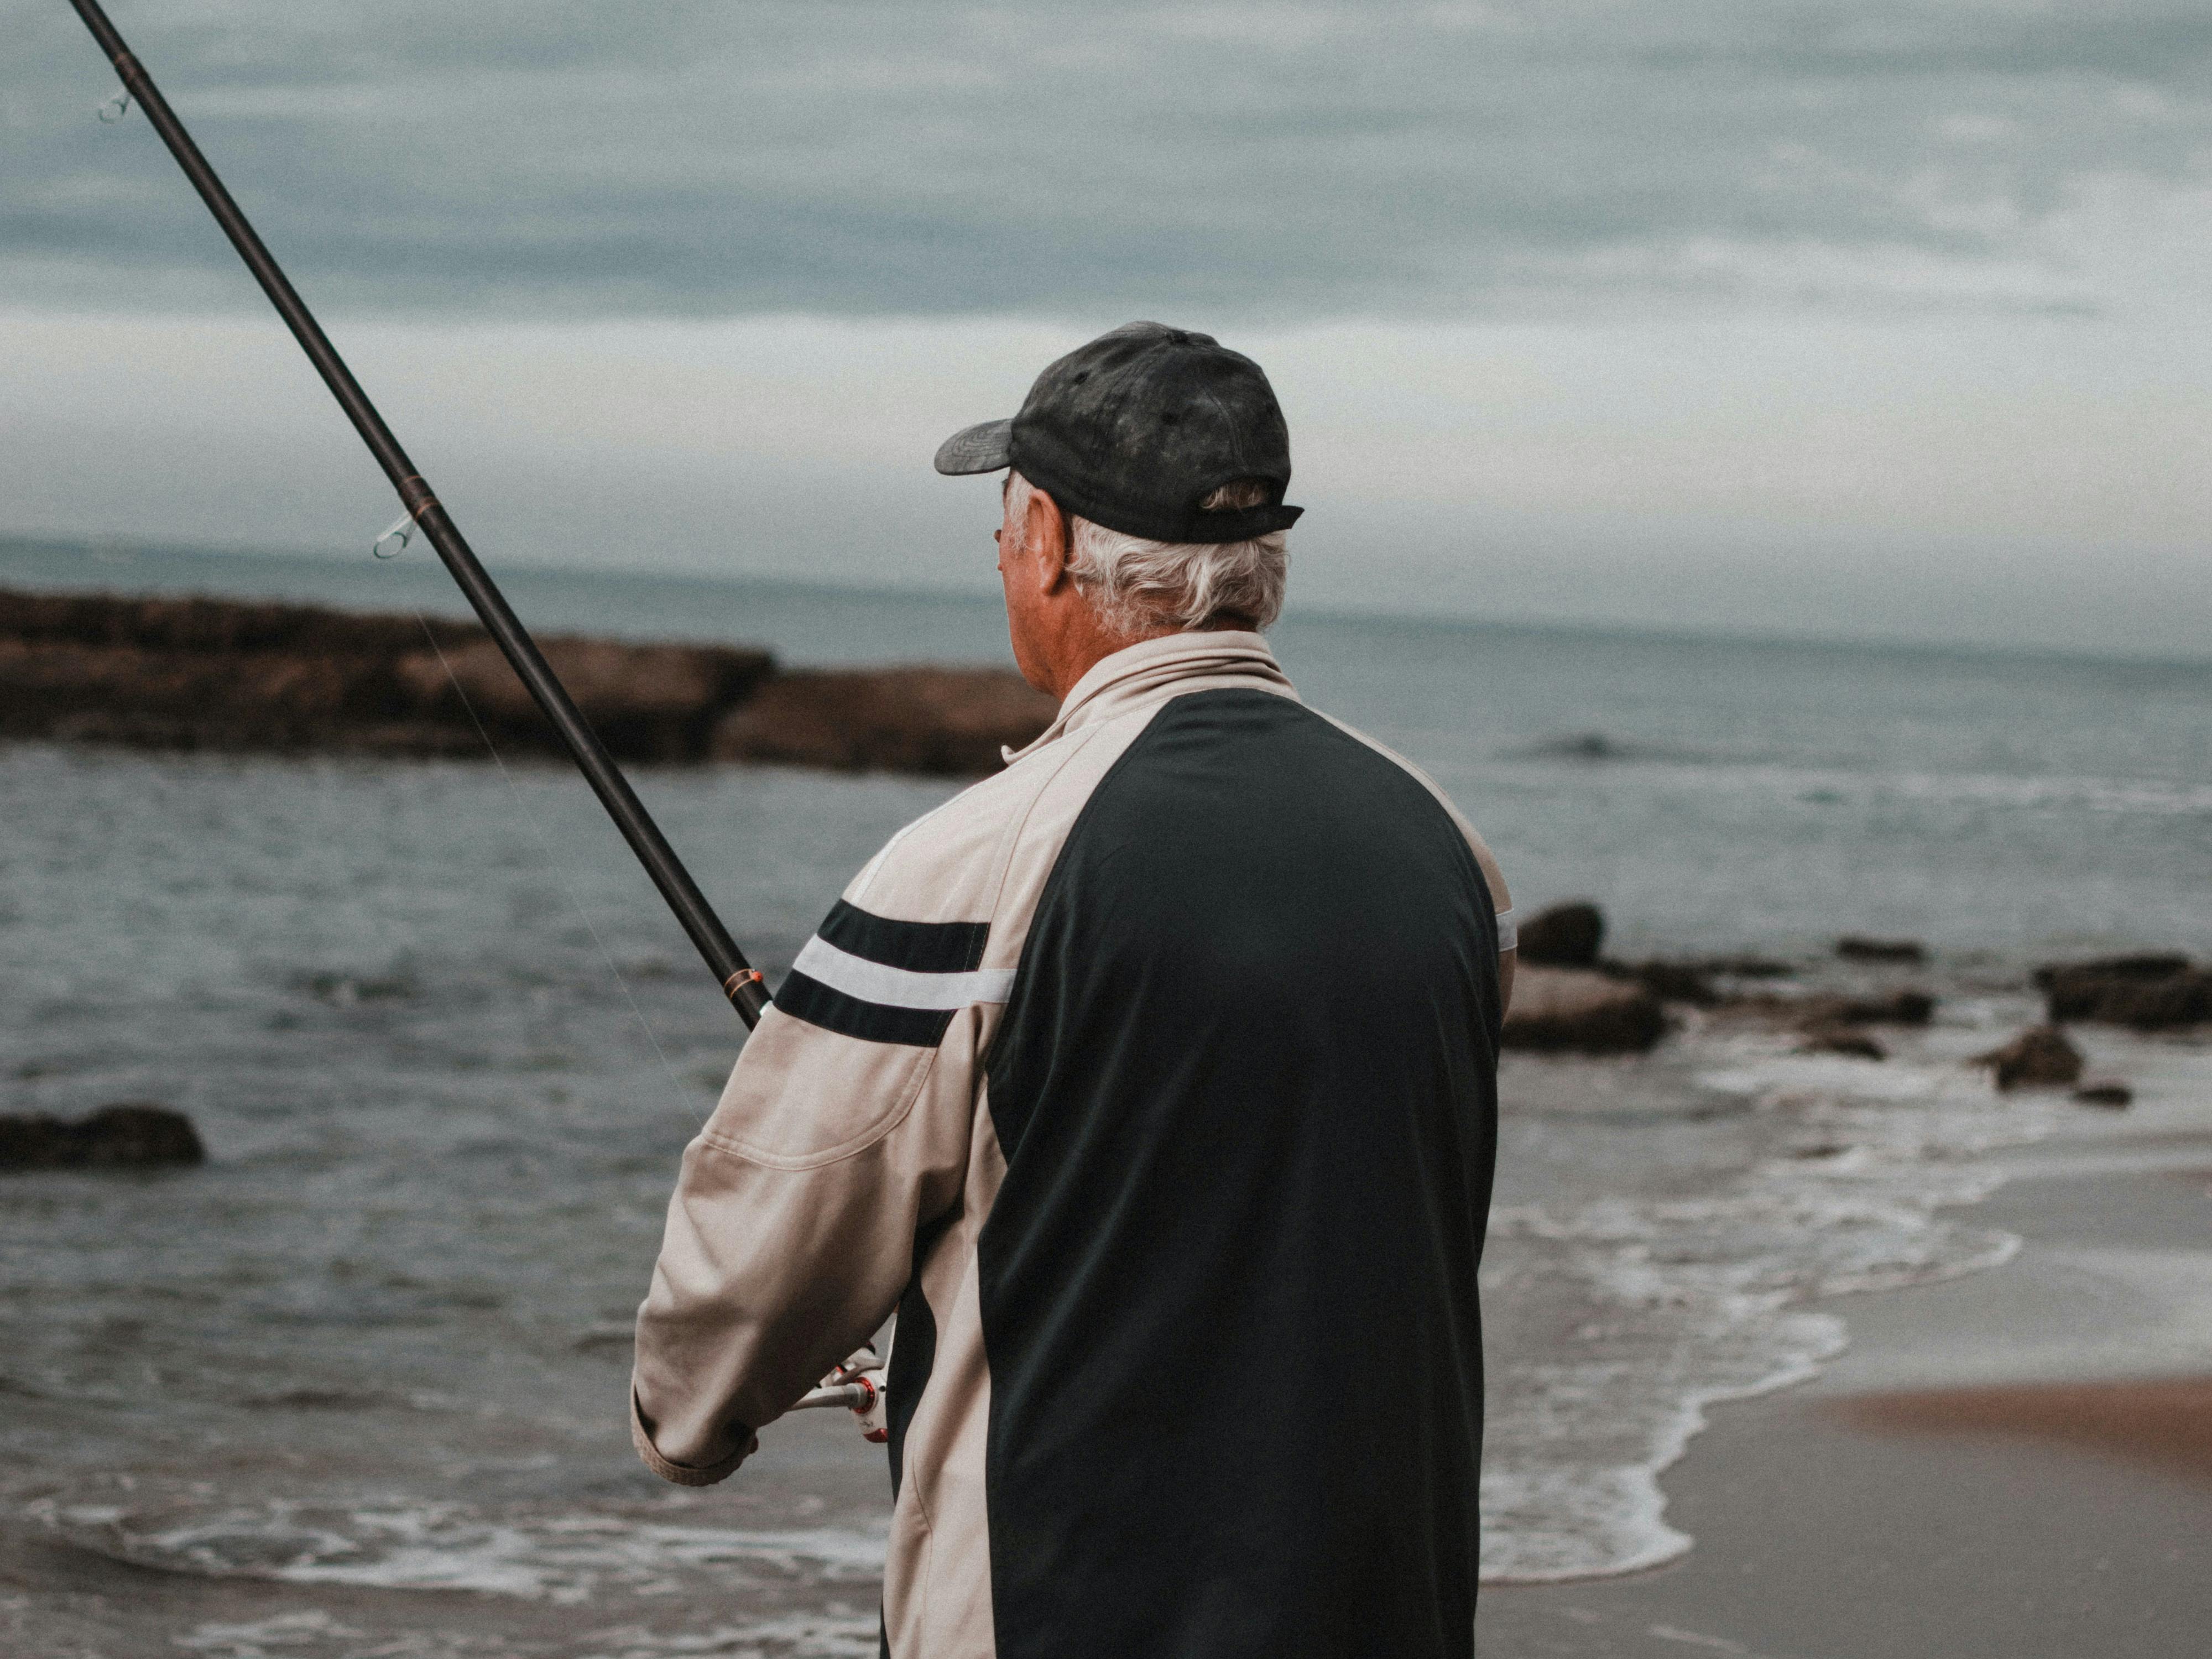 La pratique de la pêche, un loisir adapté aux seniors